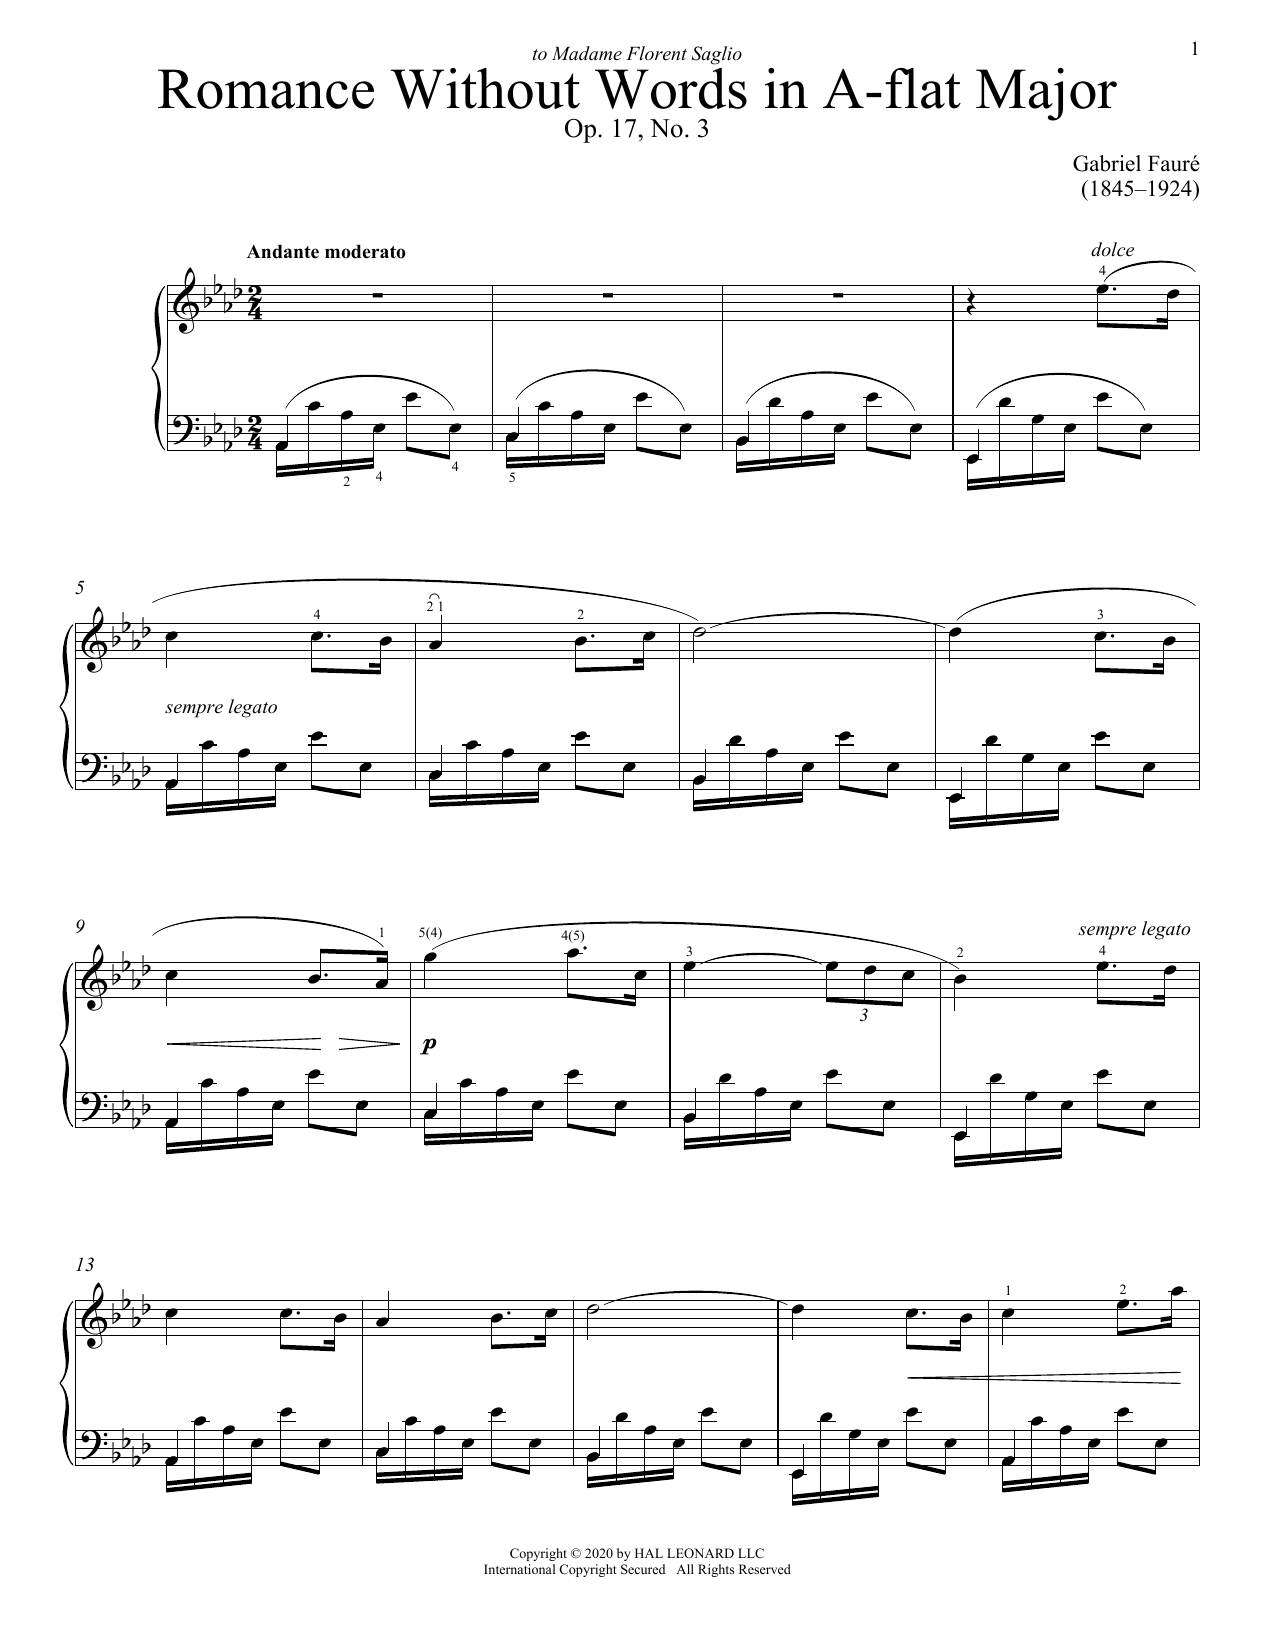 Gabriel Faure Romance Sans Paroles, Op. 17, No. 3 (Song Without Words) sheet music notes printable PDF score